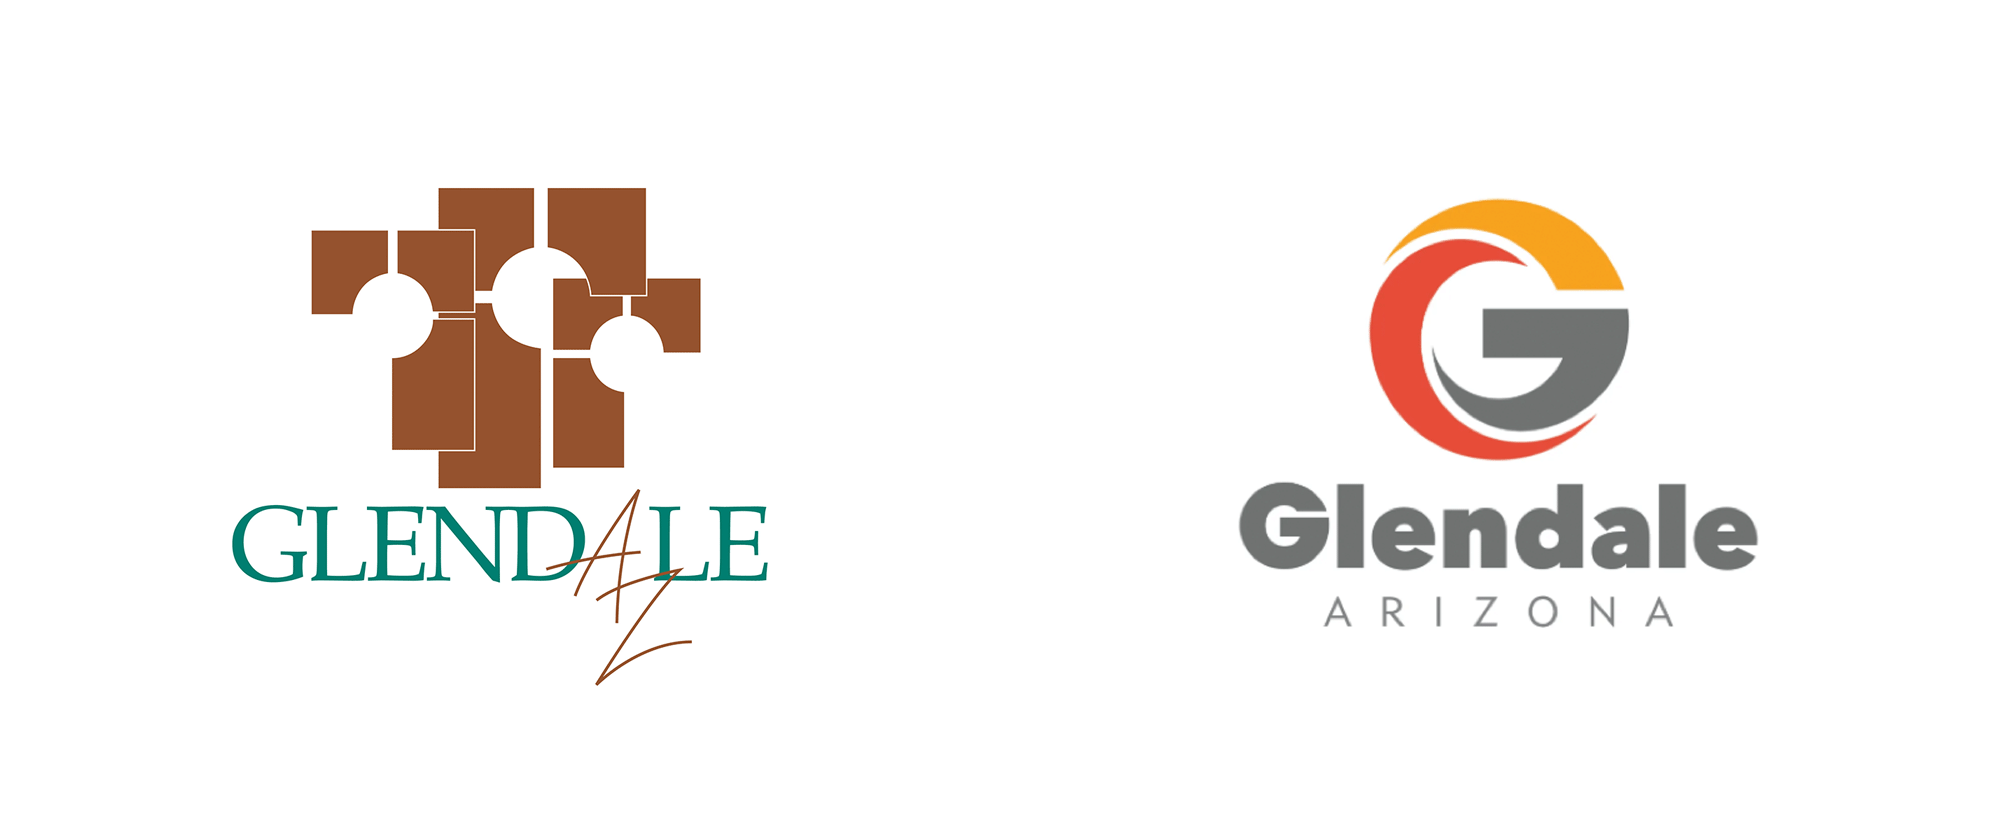 Glendale Logo - Brand New: New Logo for Glendale, AZ, by Catapult Strategic Design